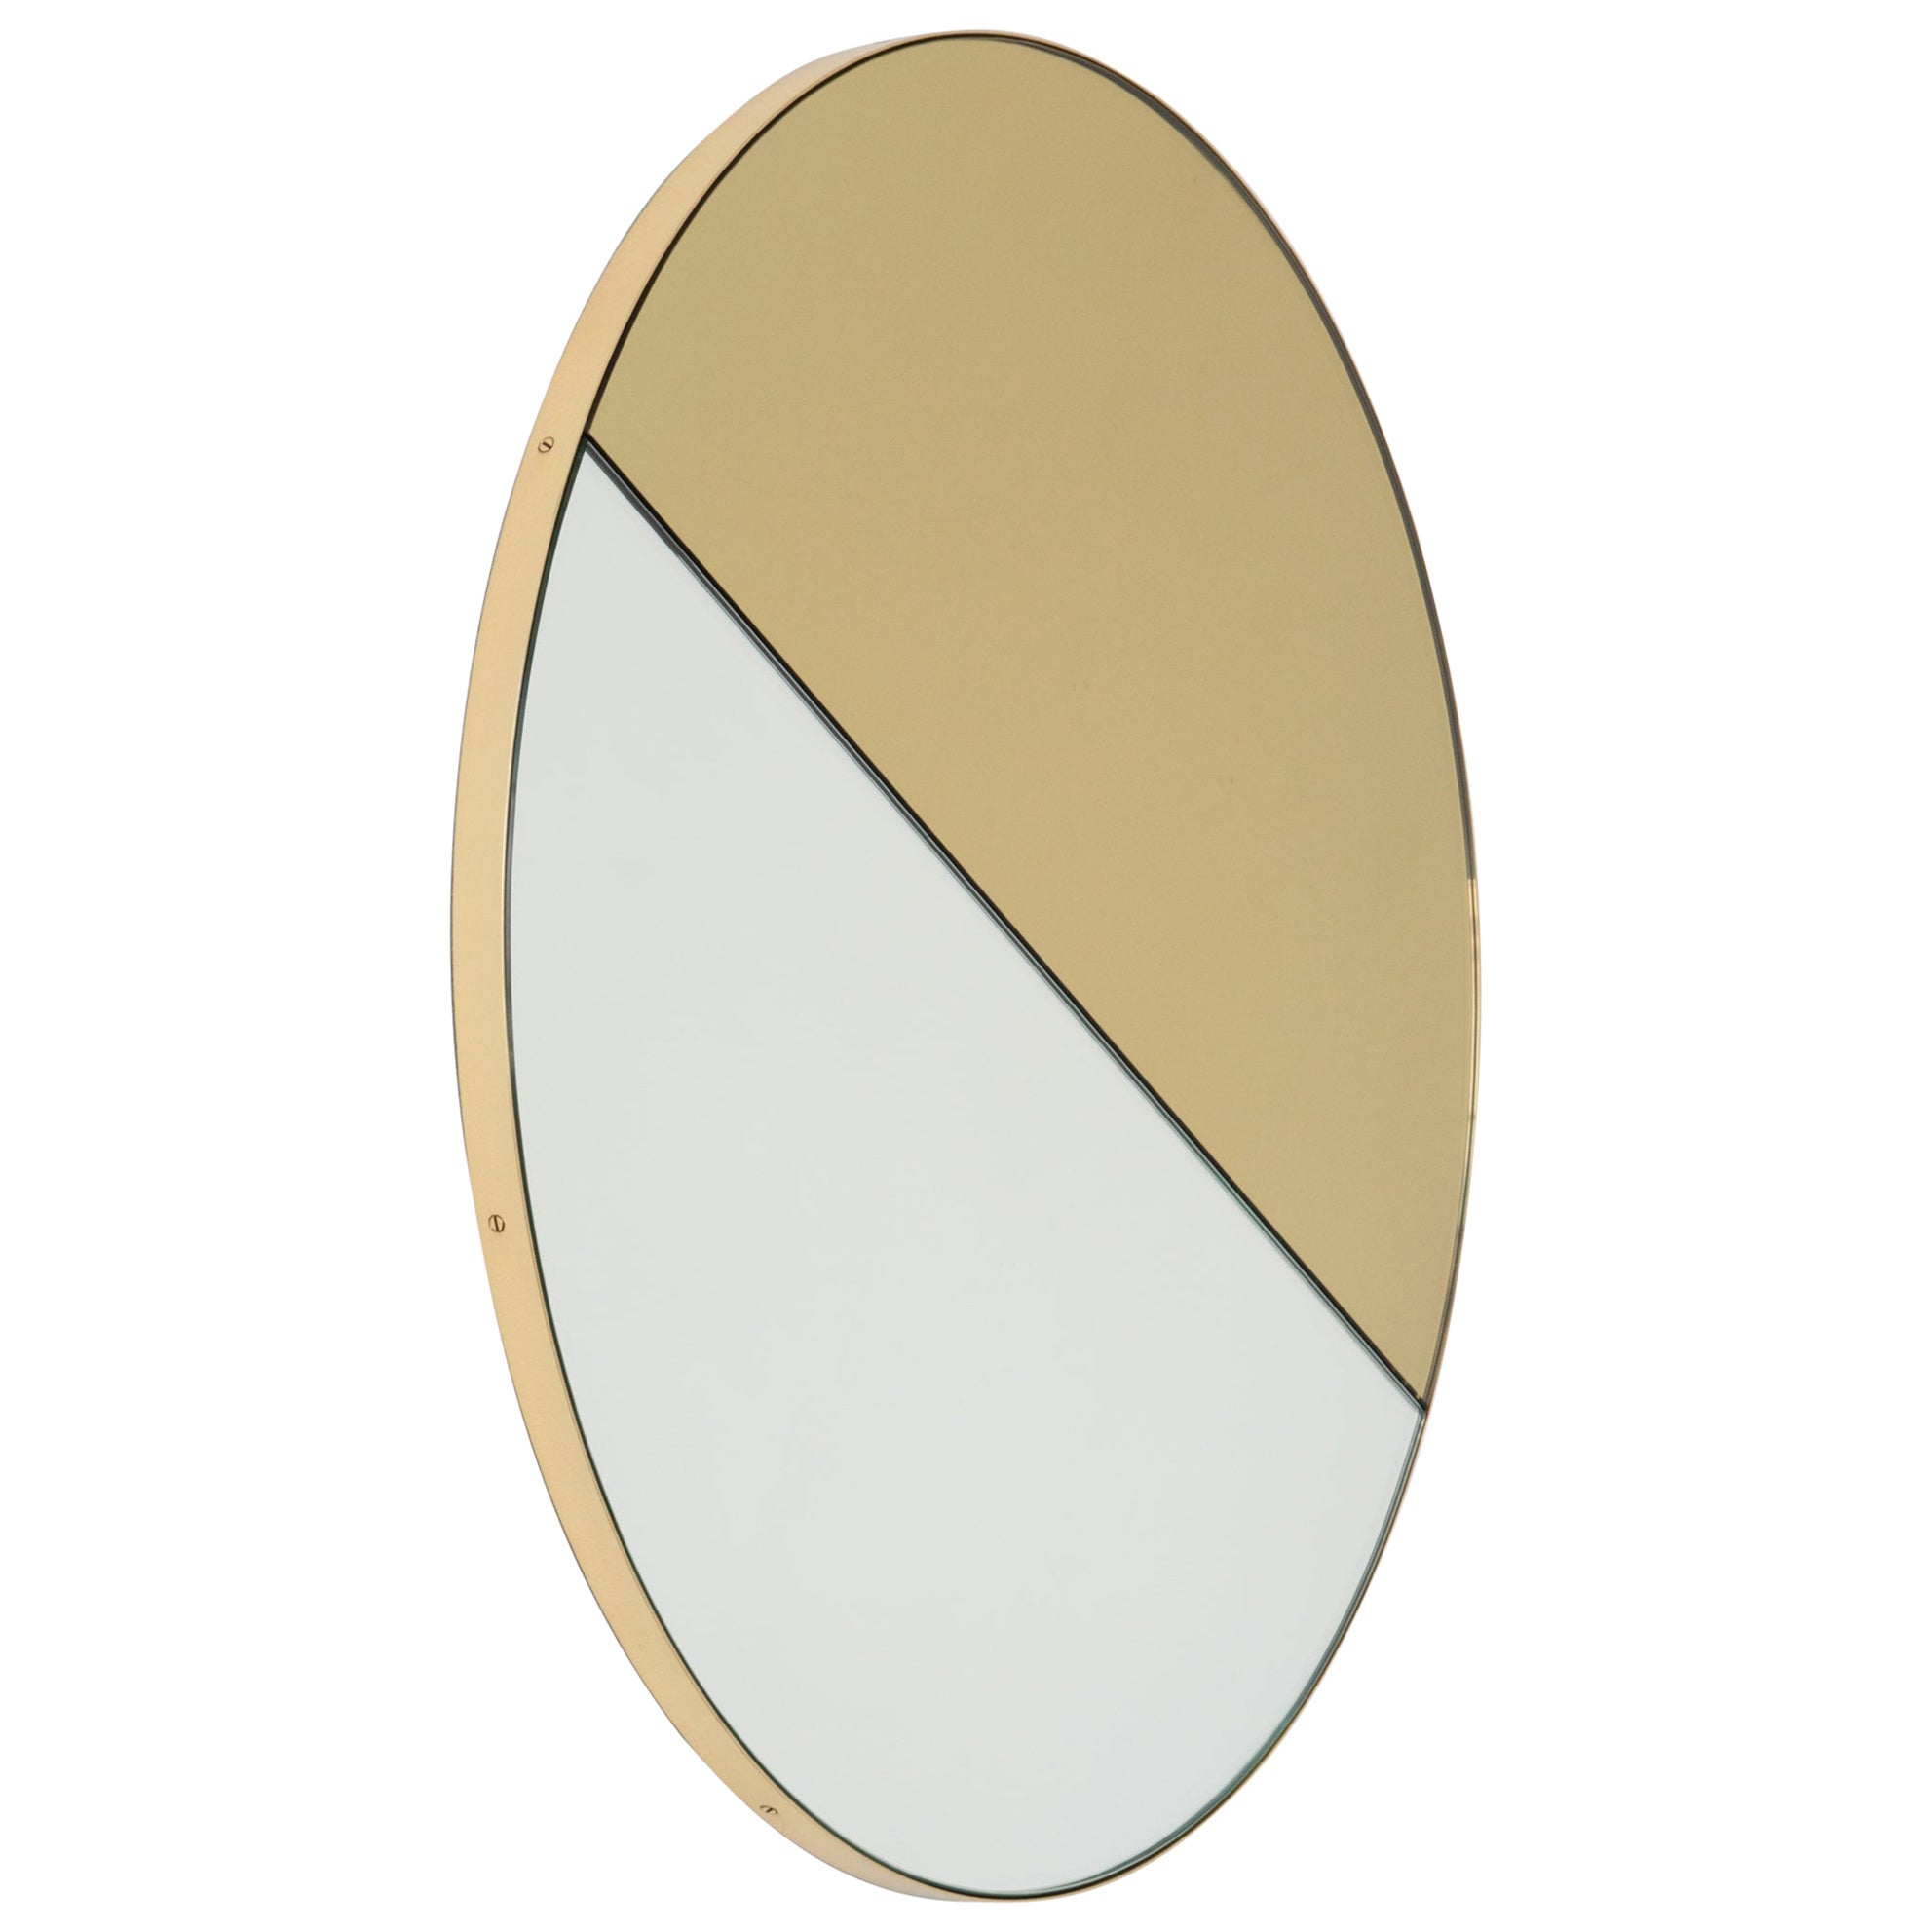 Orbis Dualis Runder gemischter, goldfarbener, moderner Spiegel mit Messingrahmen, Medium